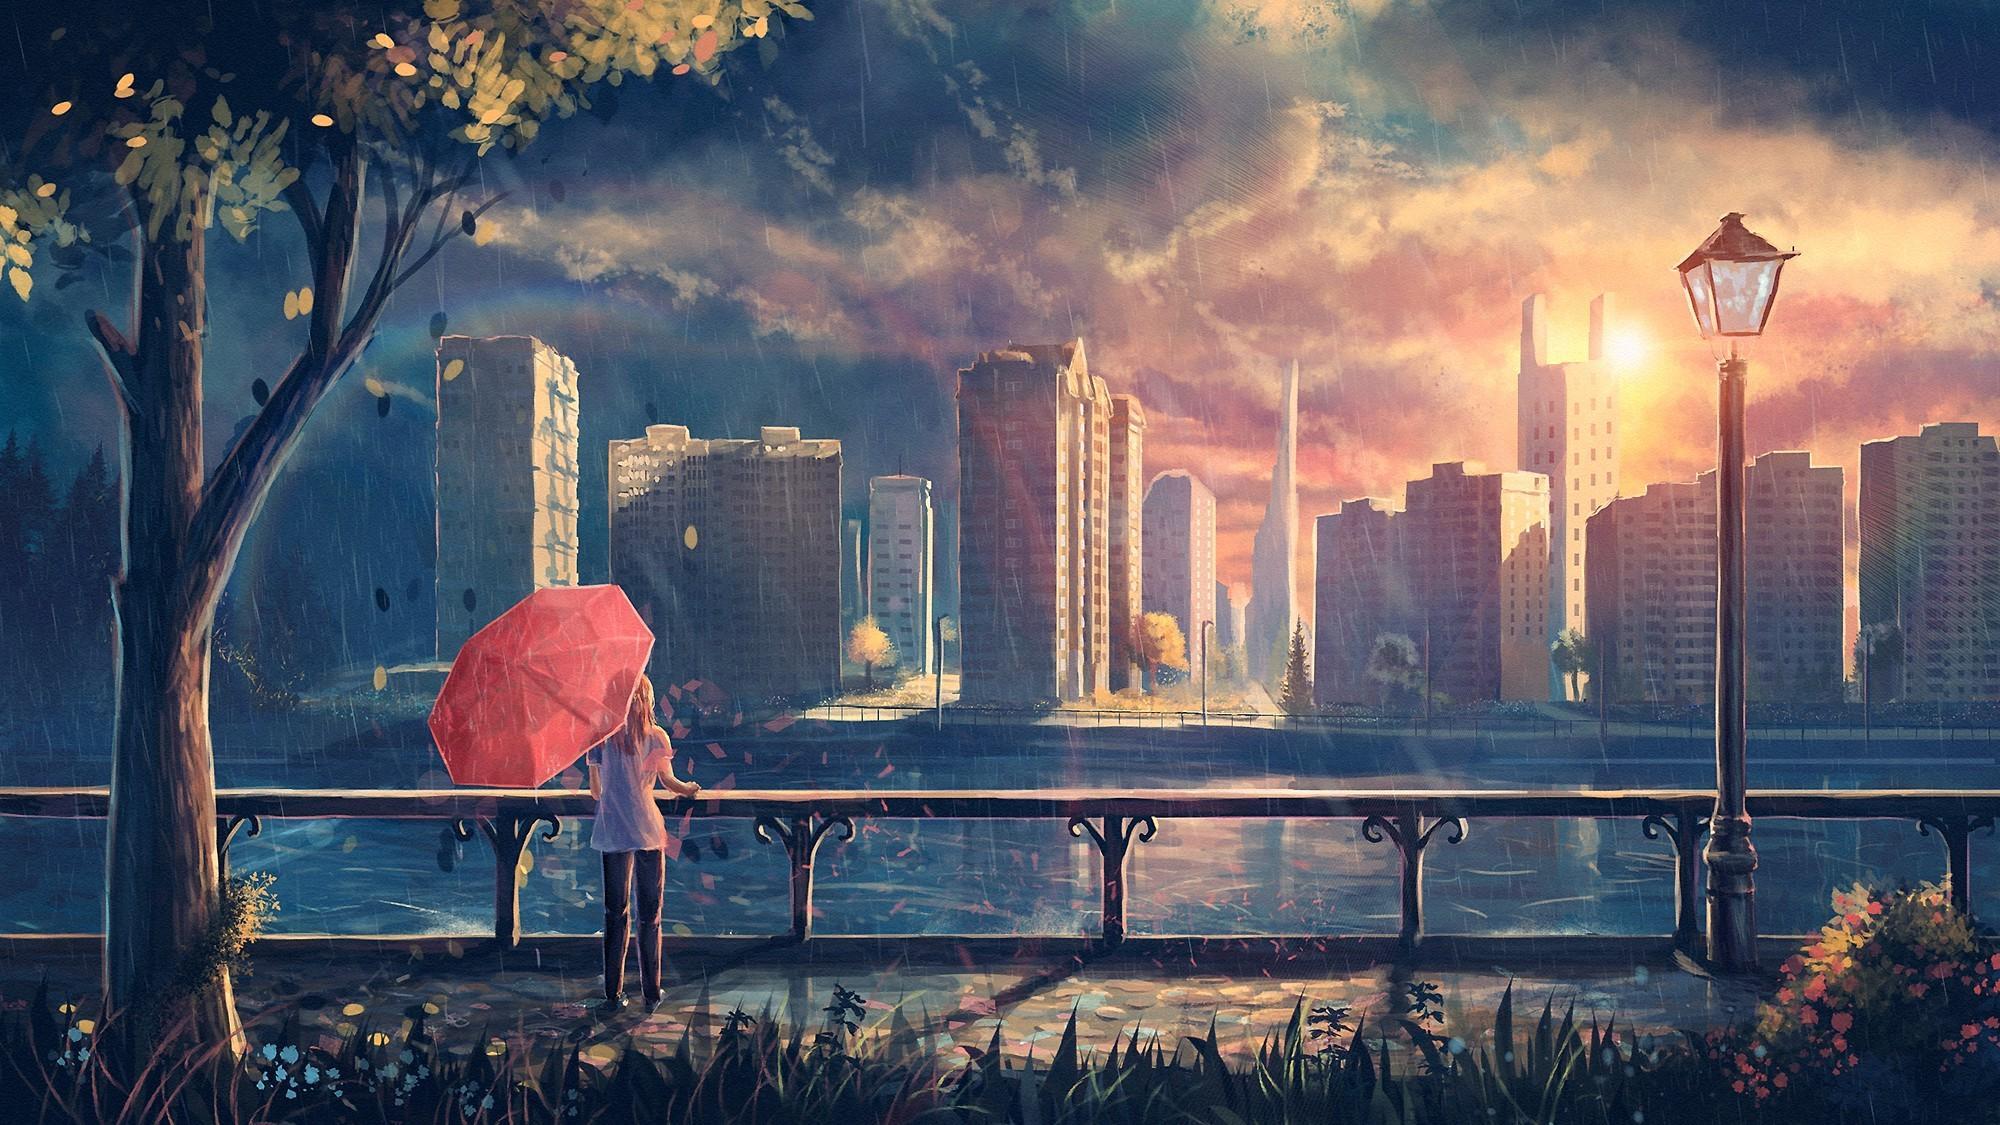 HD wallpaper Anime City Sunset Skyline  Wallpaper Flare